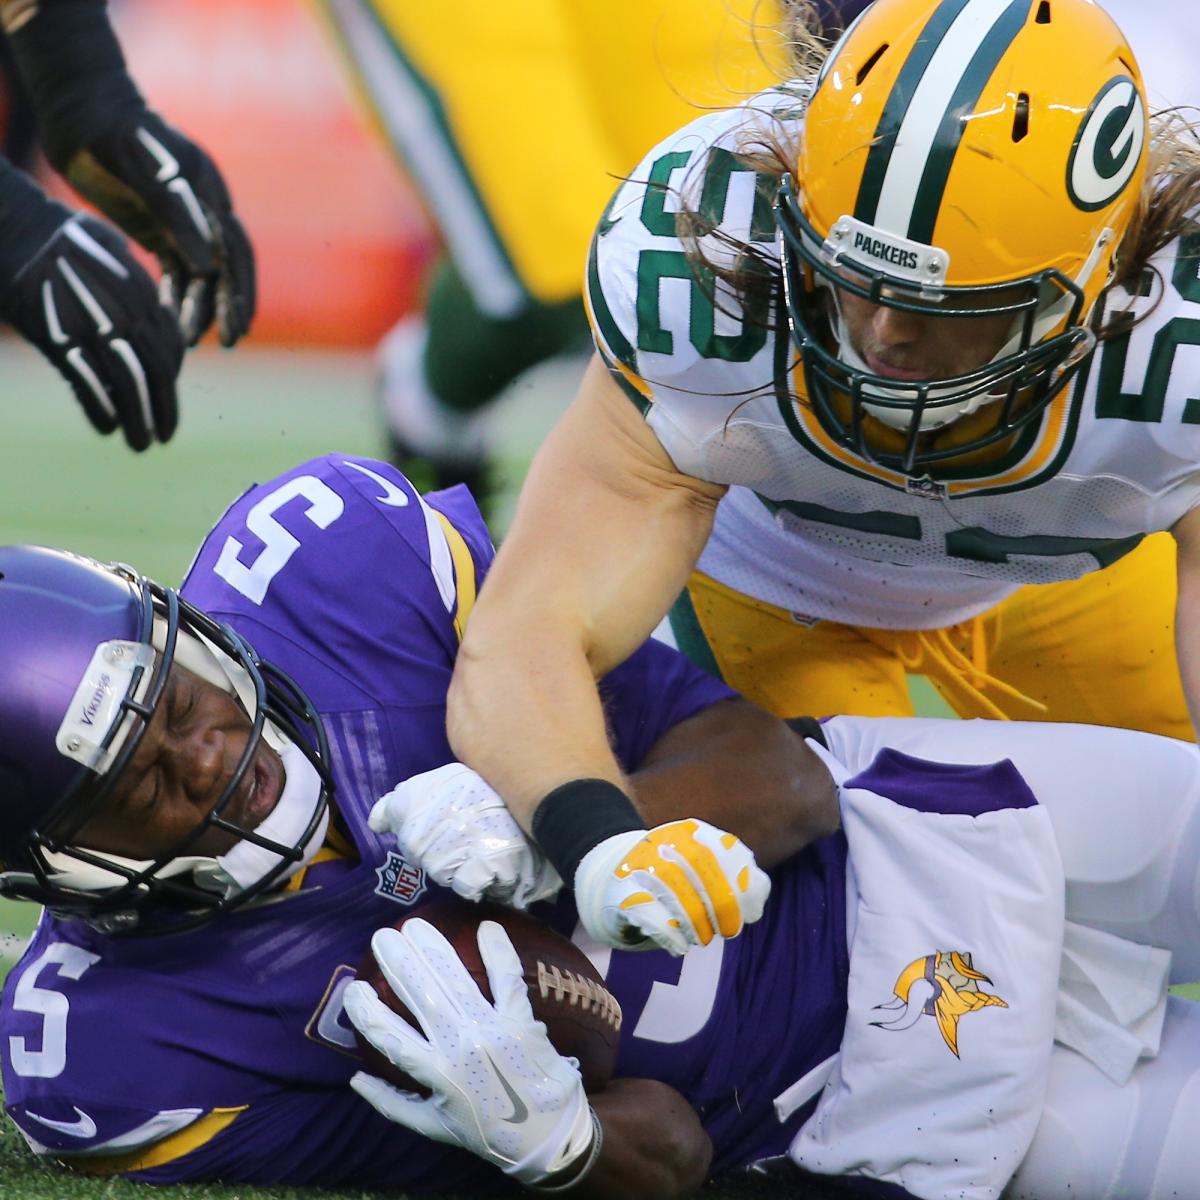 Eddie Lacy Highlights (Week 11), Packers vs. Vikings